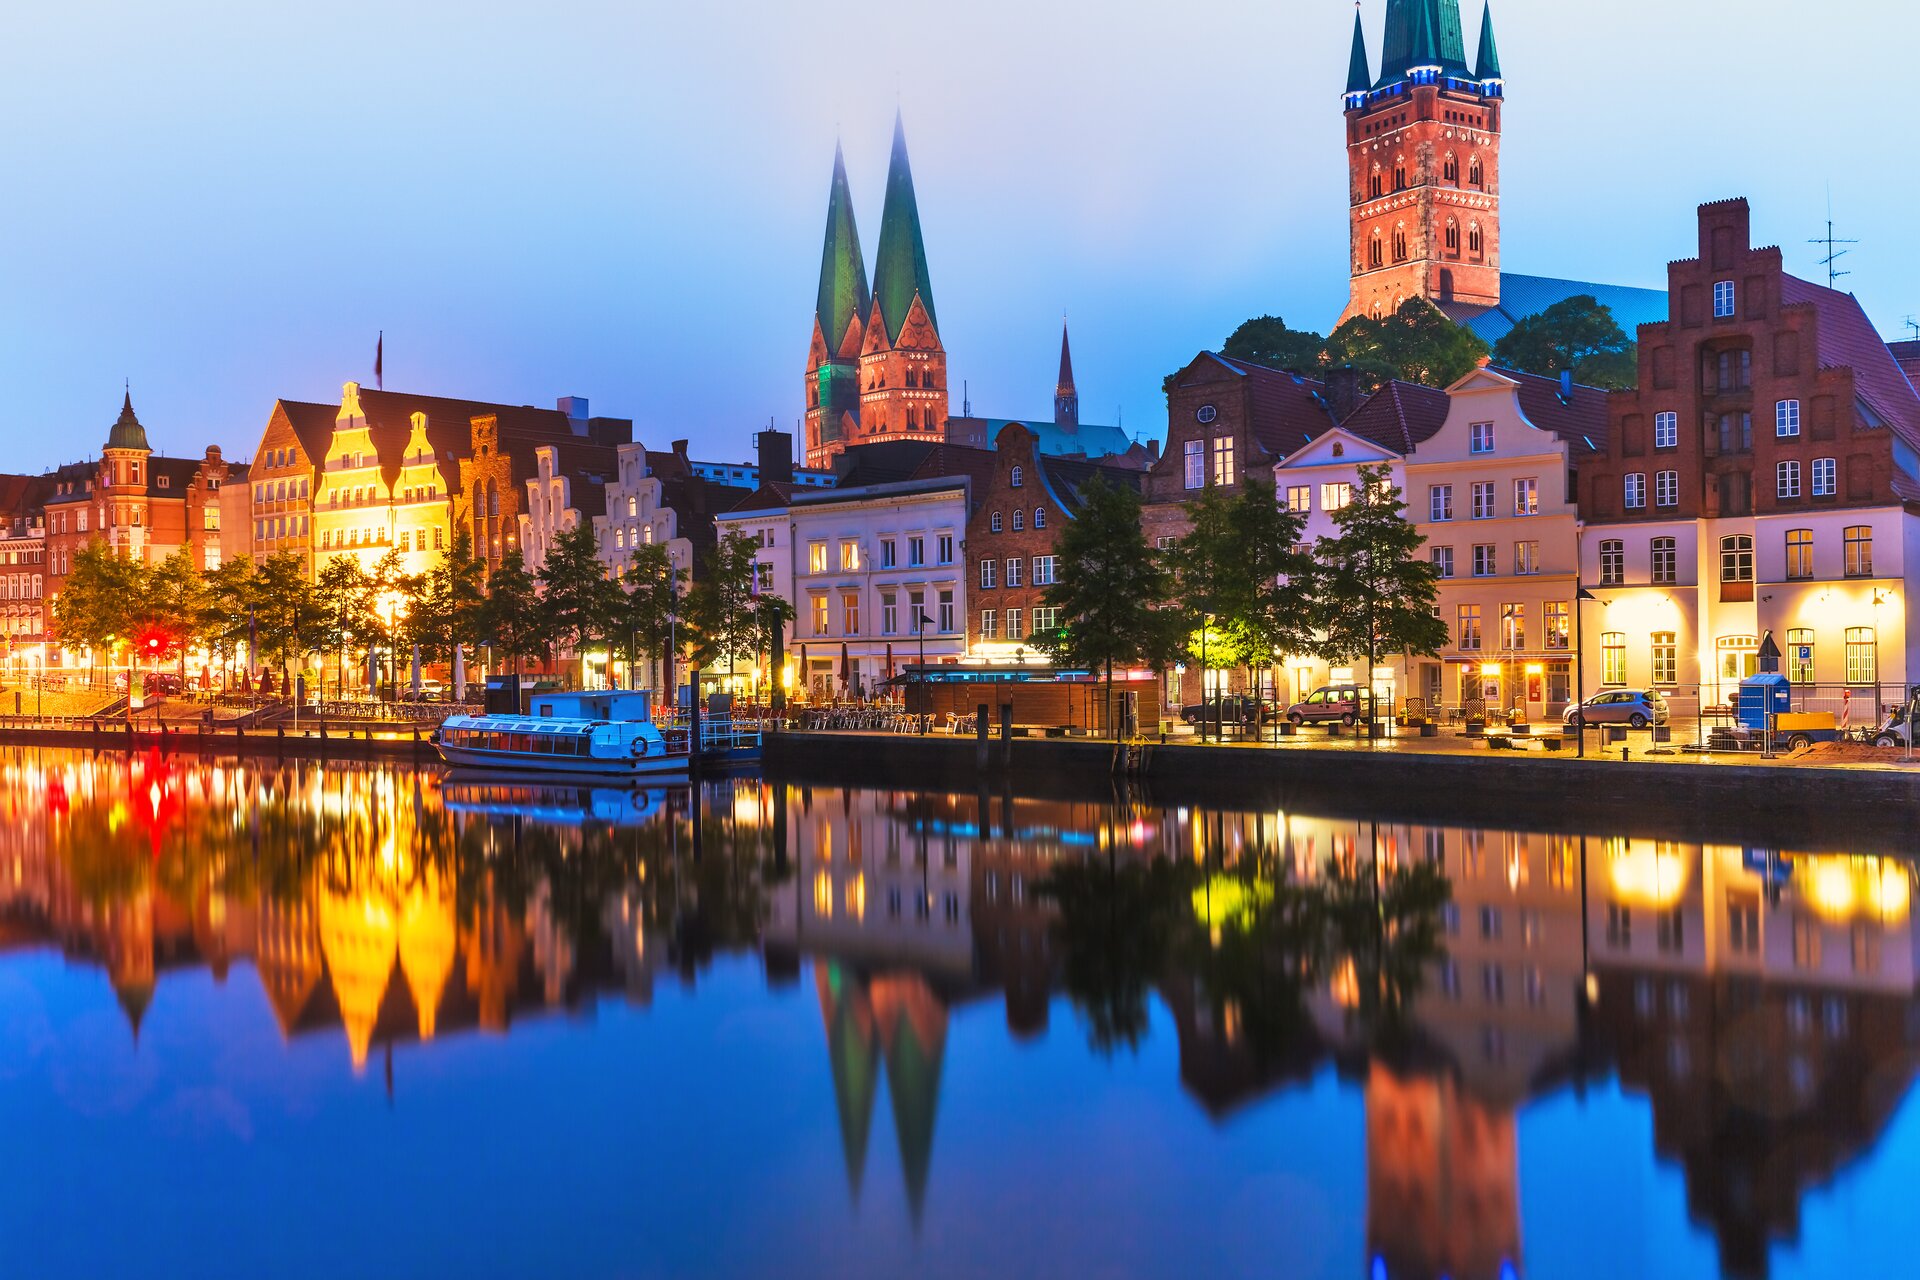 Zdjęcie przedstawia widok na miasto Lubecka, które znajduje się w Niemczech. Zdjęcie wykonano w nocy. Budynki są pieknie podświetlone i ich kształt odbija się w wodzie.